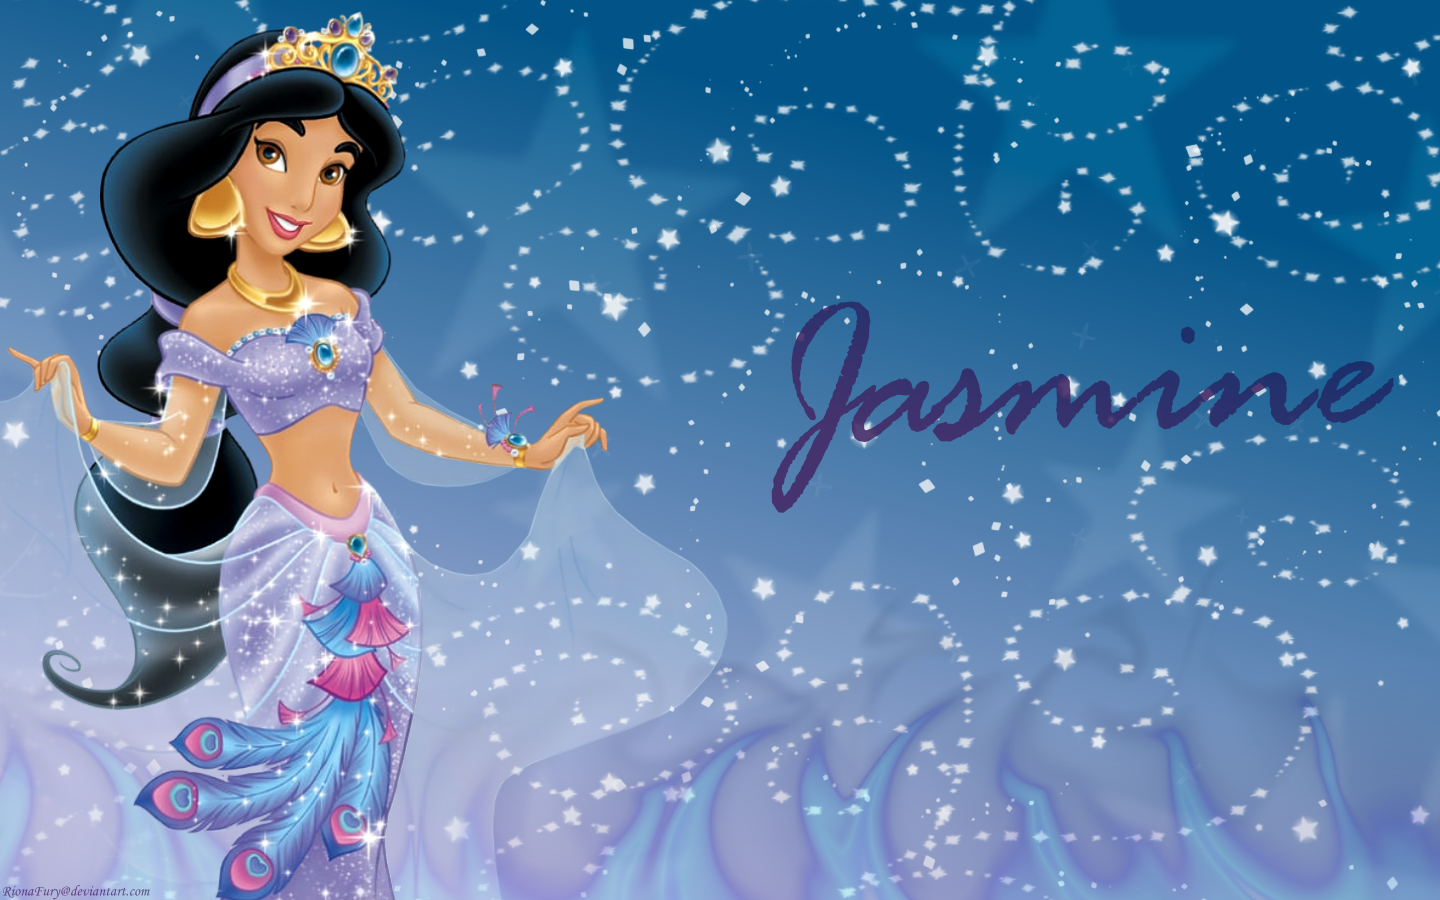 Jasmine - Disney Princess Wallpaper (24261169) - Fanpop